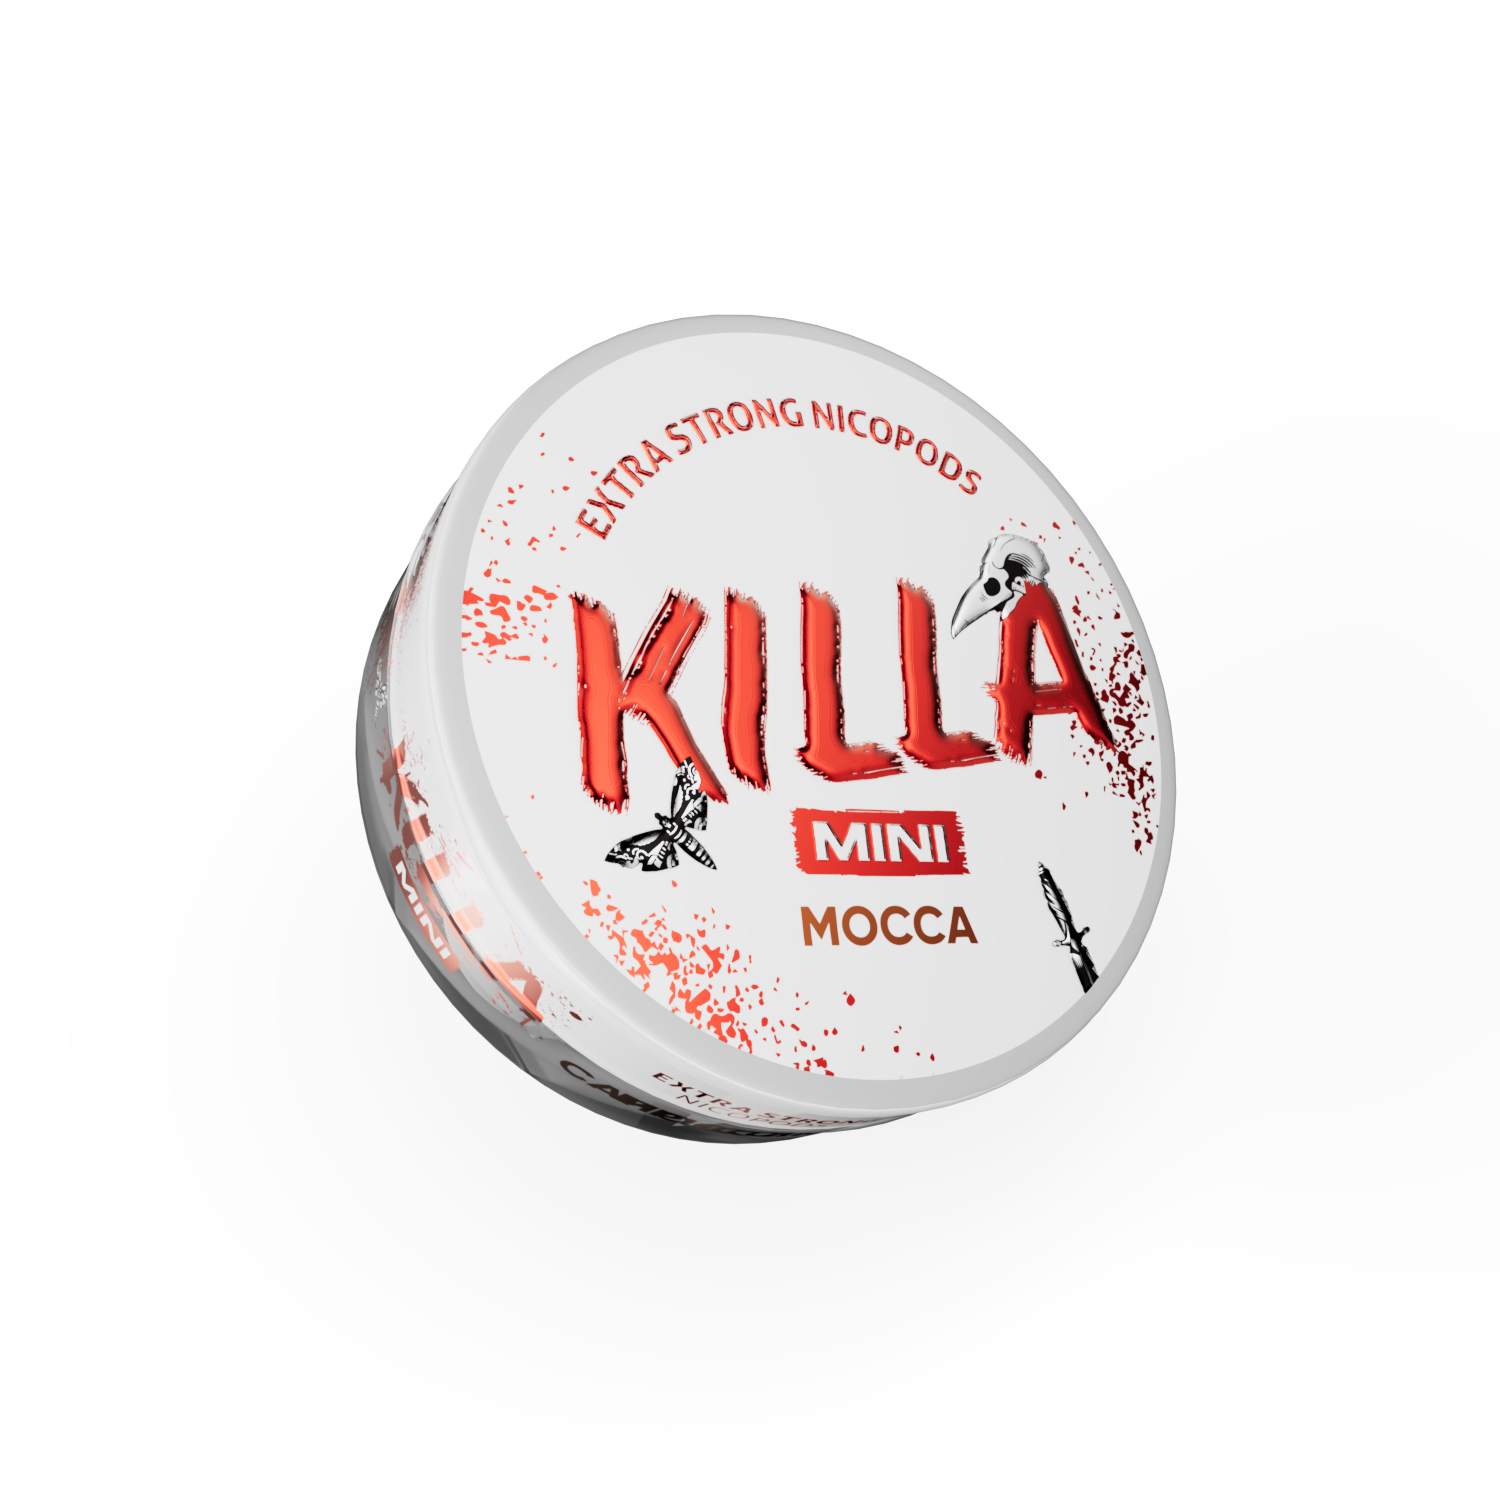 Killa_Mini_Mocca_2